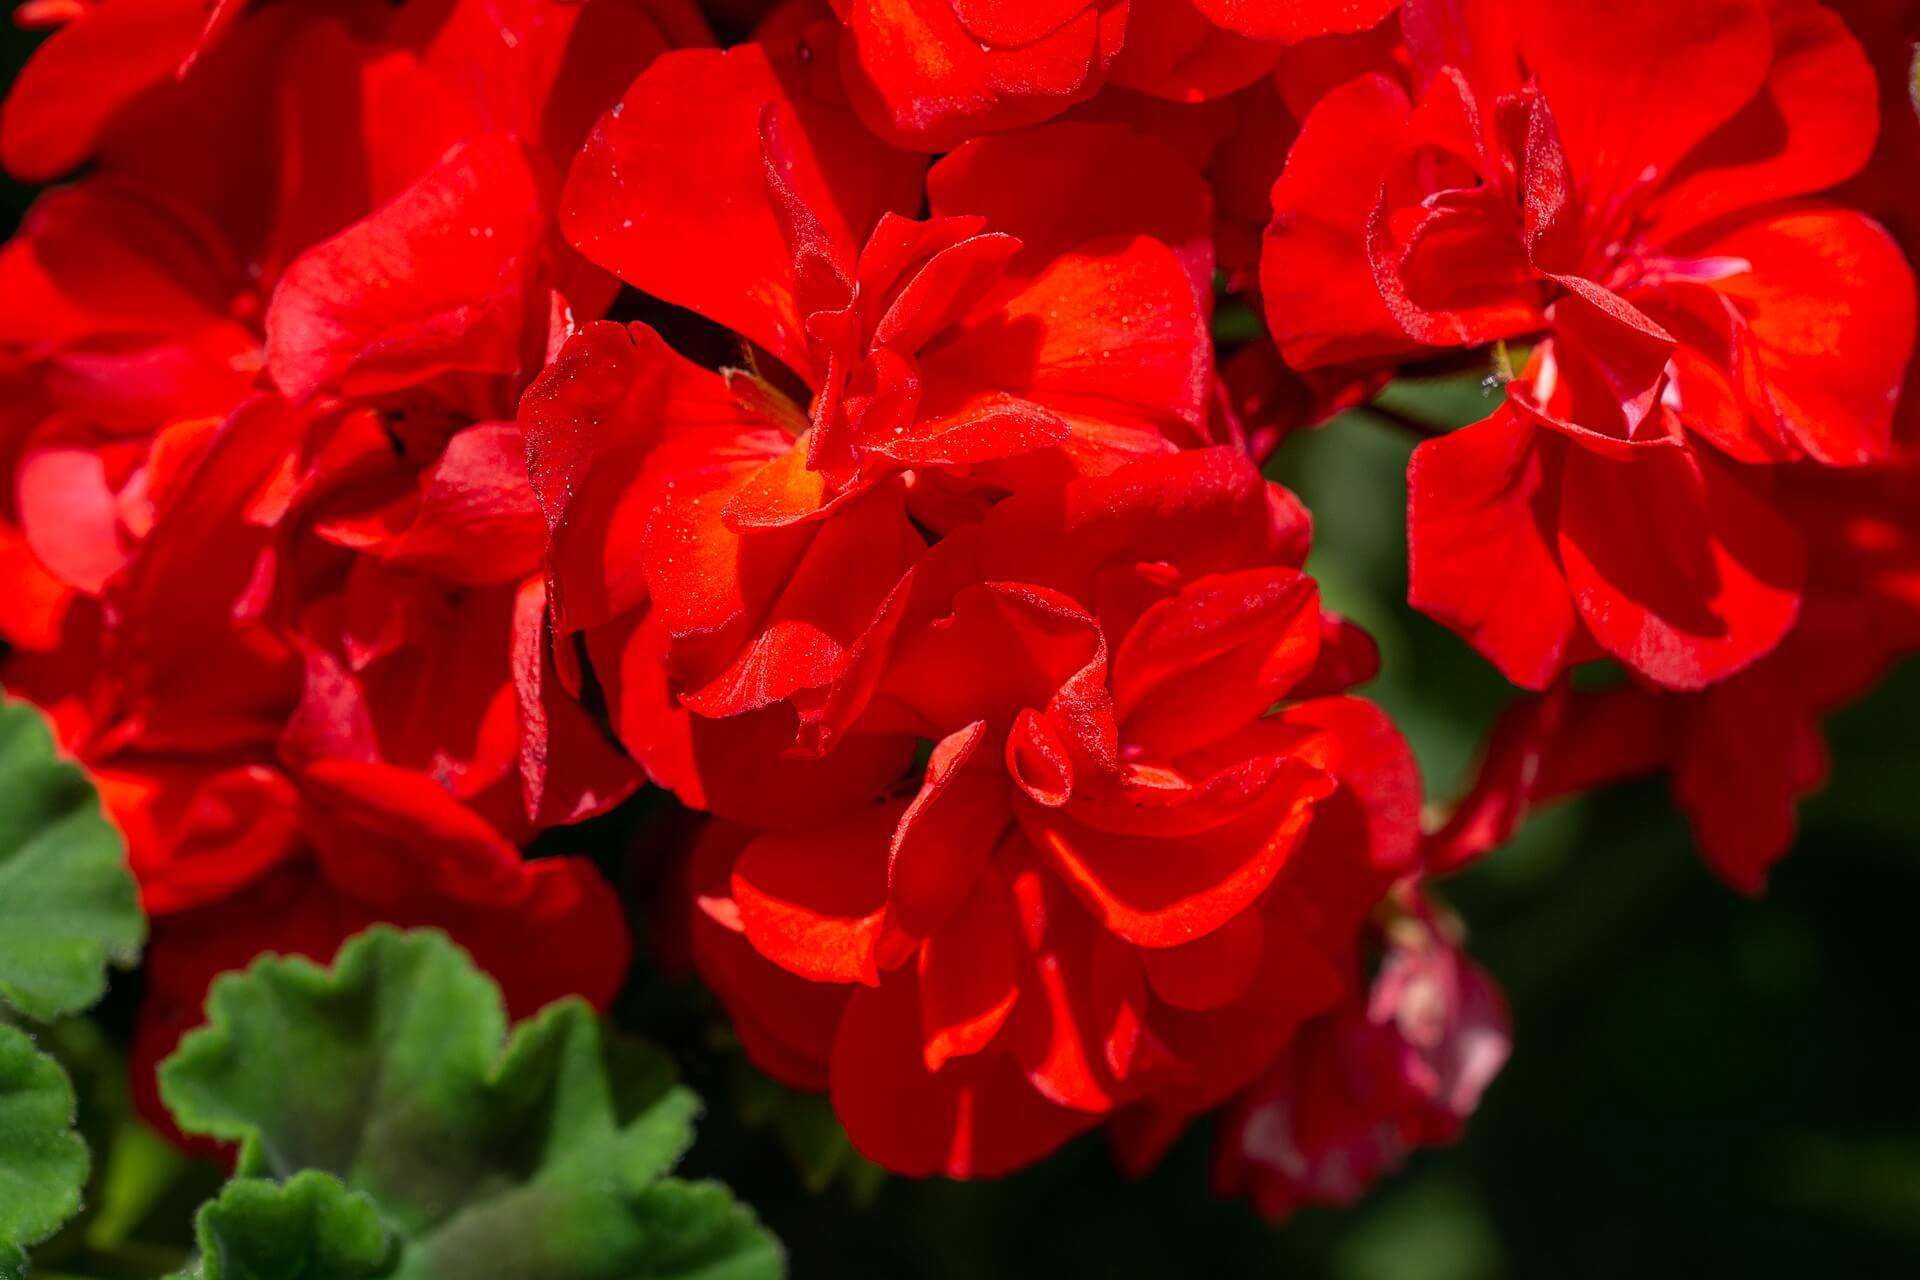 A close up of red geraniums